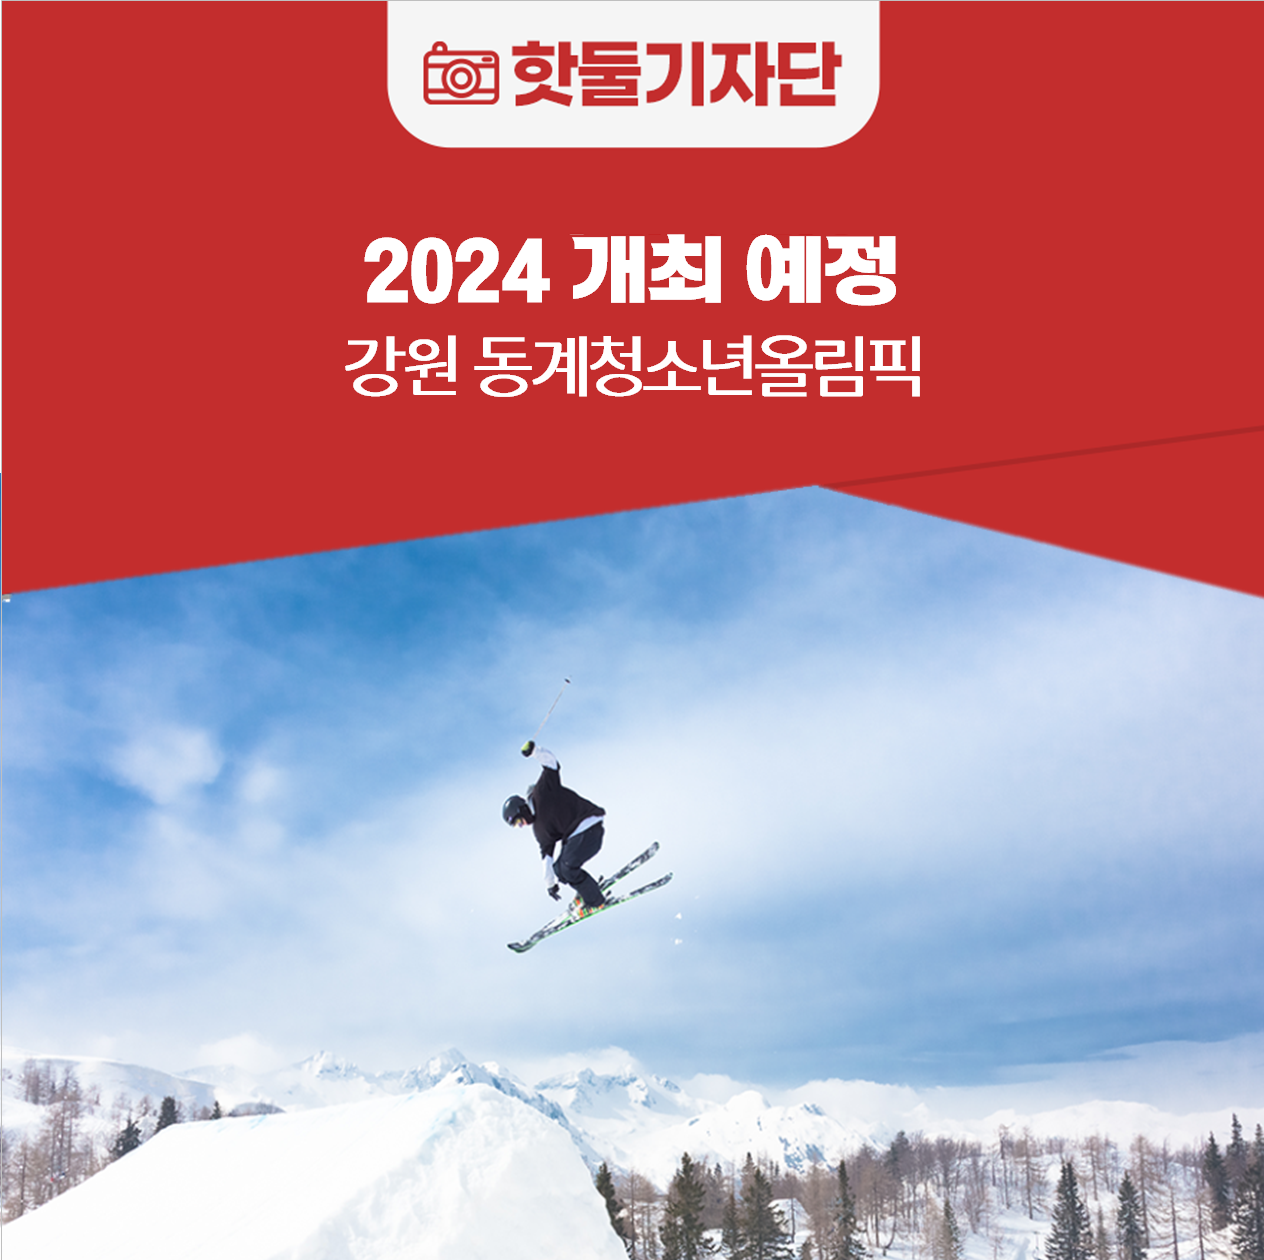 아시아에서 처음 진행되는 “2024 강원 동계청소년올림픽”에 대해 알아보자!이미지